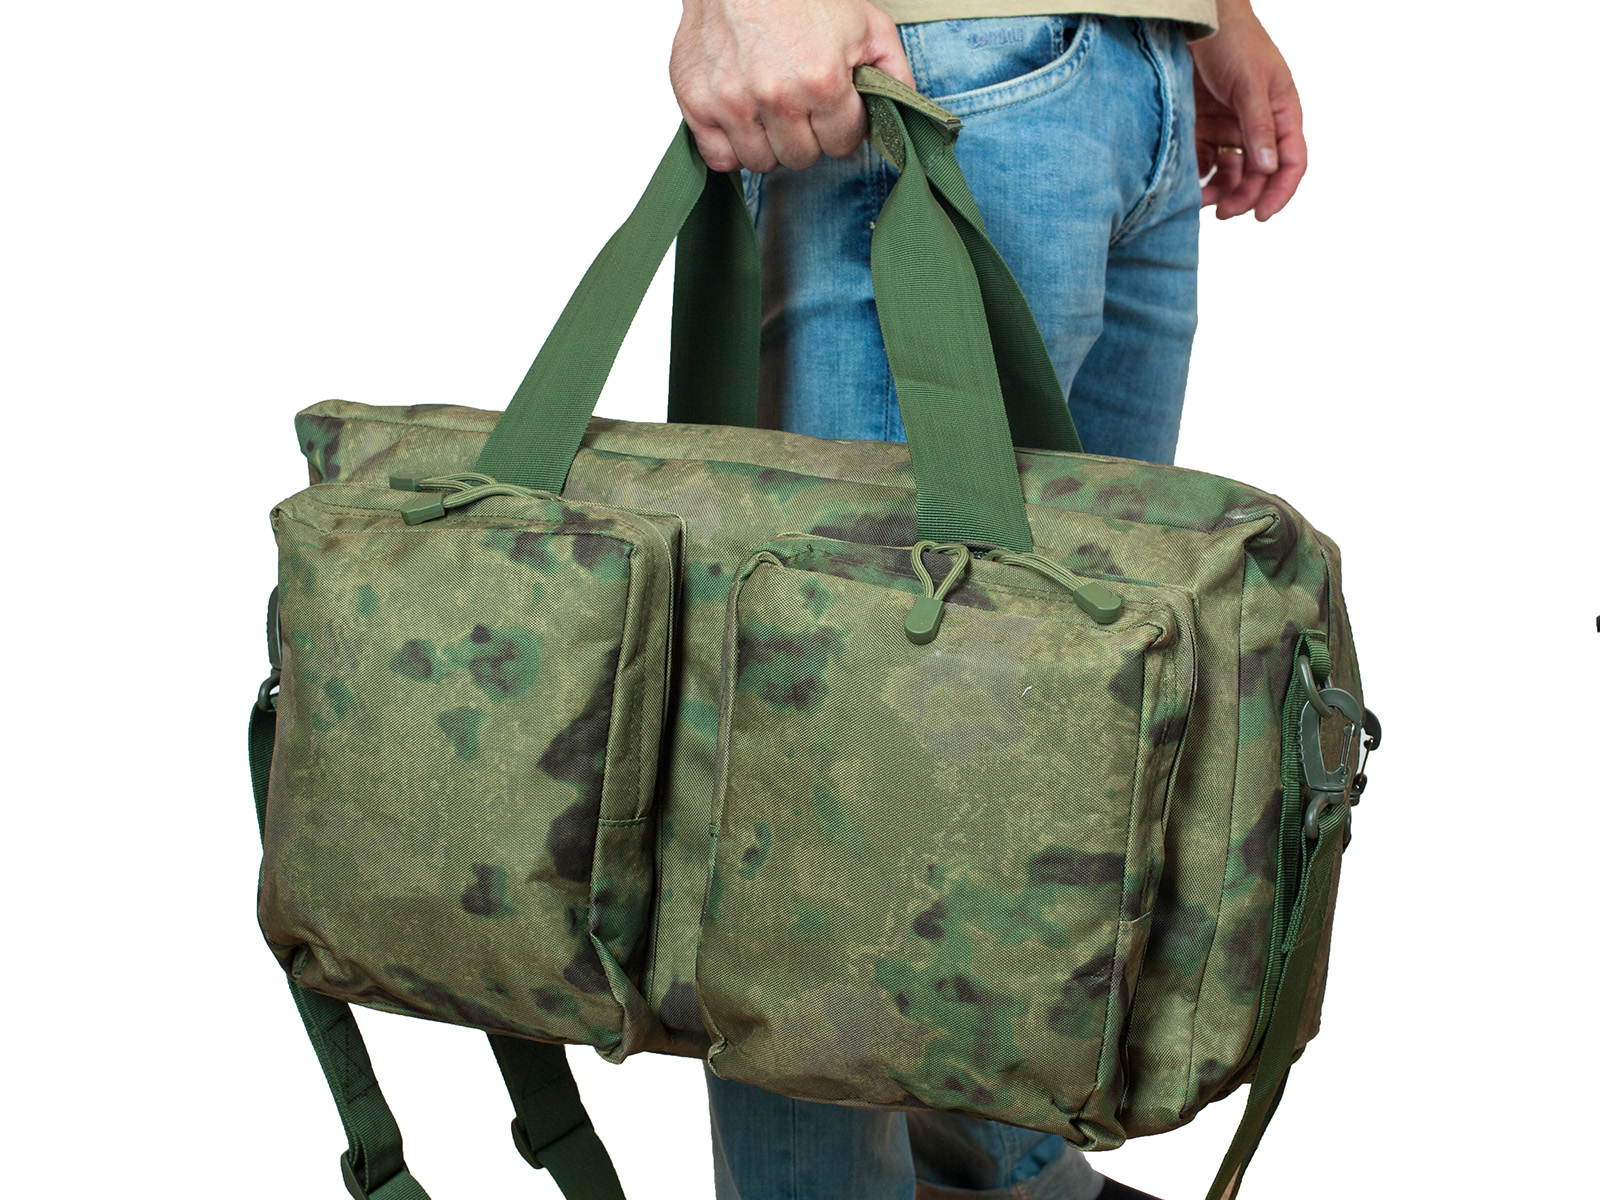 Заплечная камуфляжная сумка-баул ДПС 